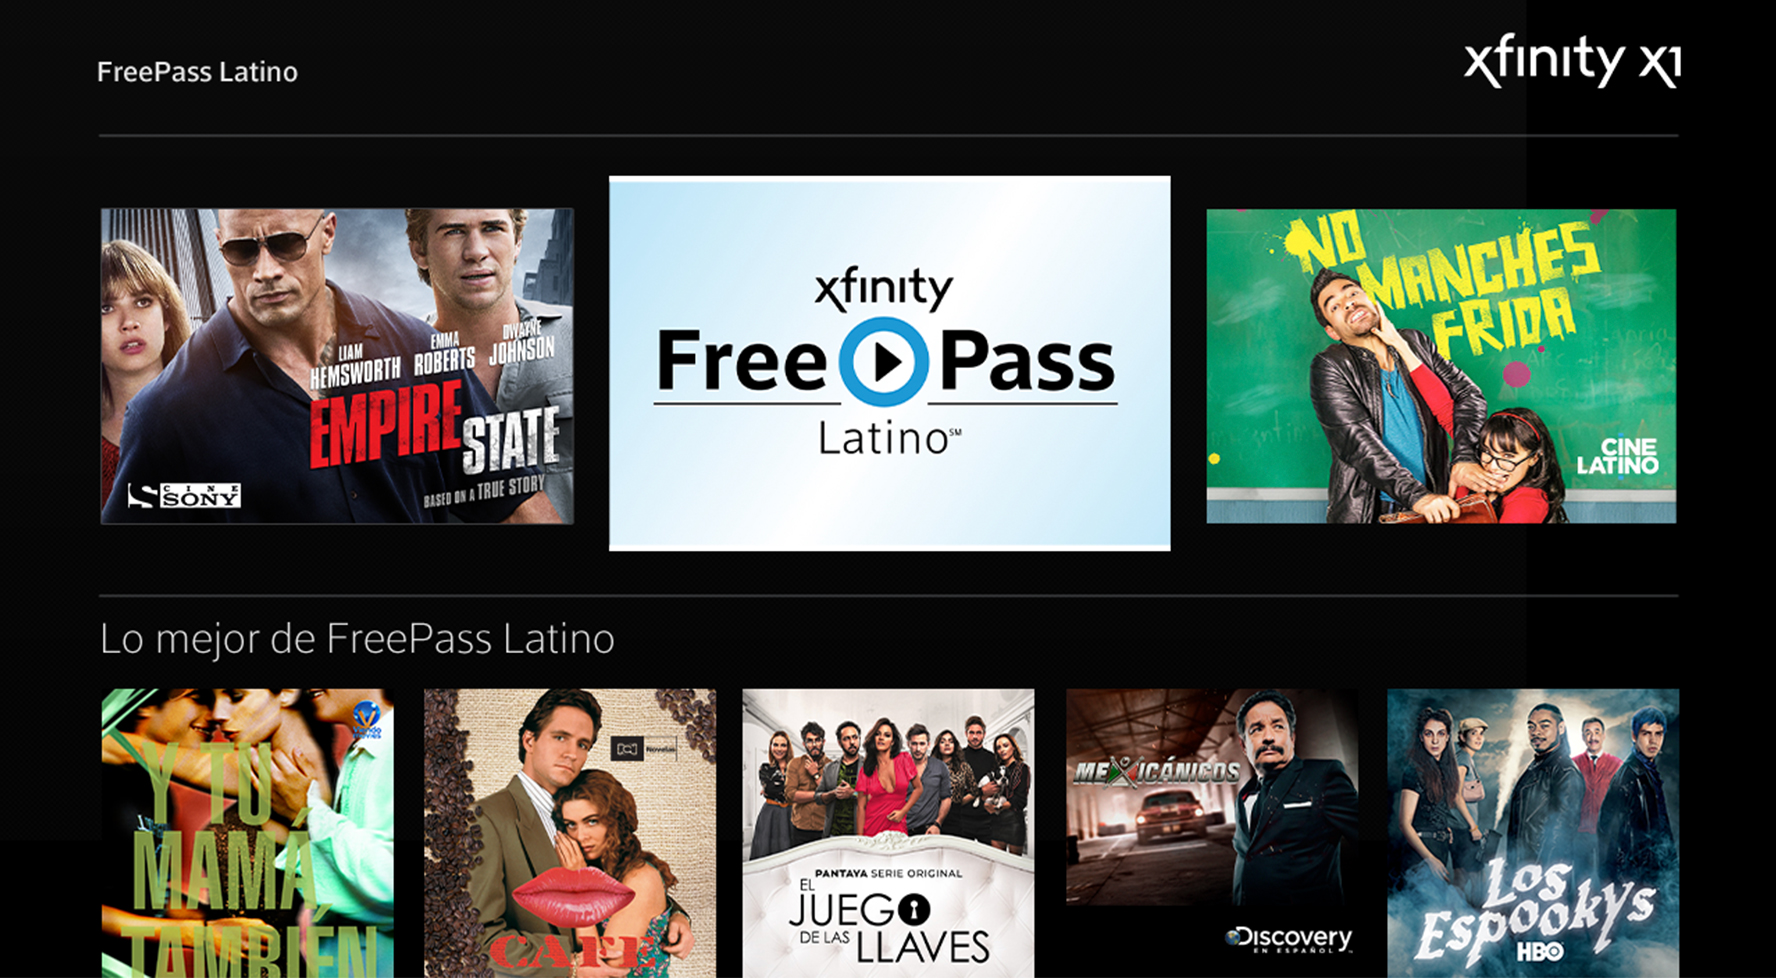 Xfinity FreePass Latino ofrece cientos de películas gratis en español Digital Trends Español